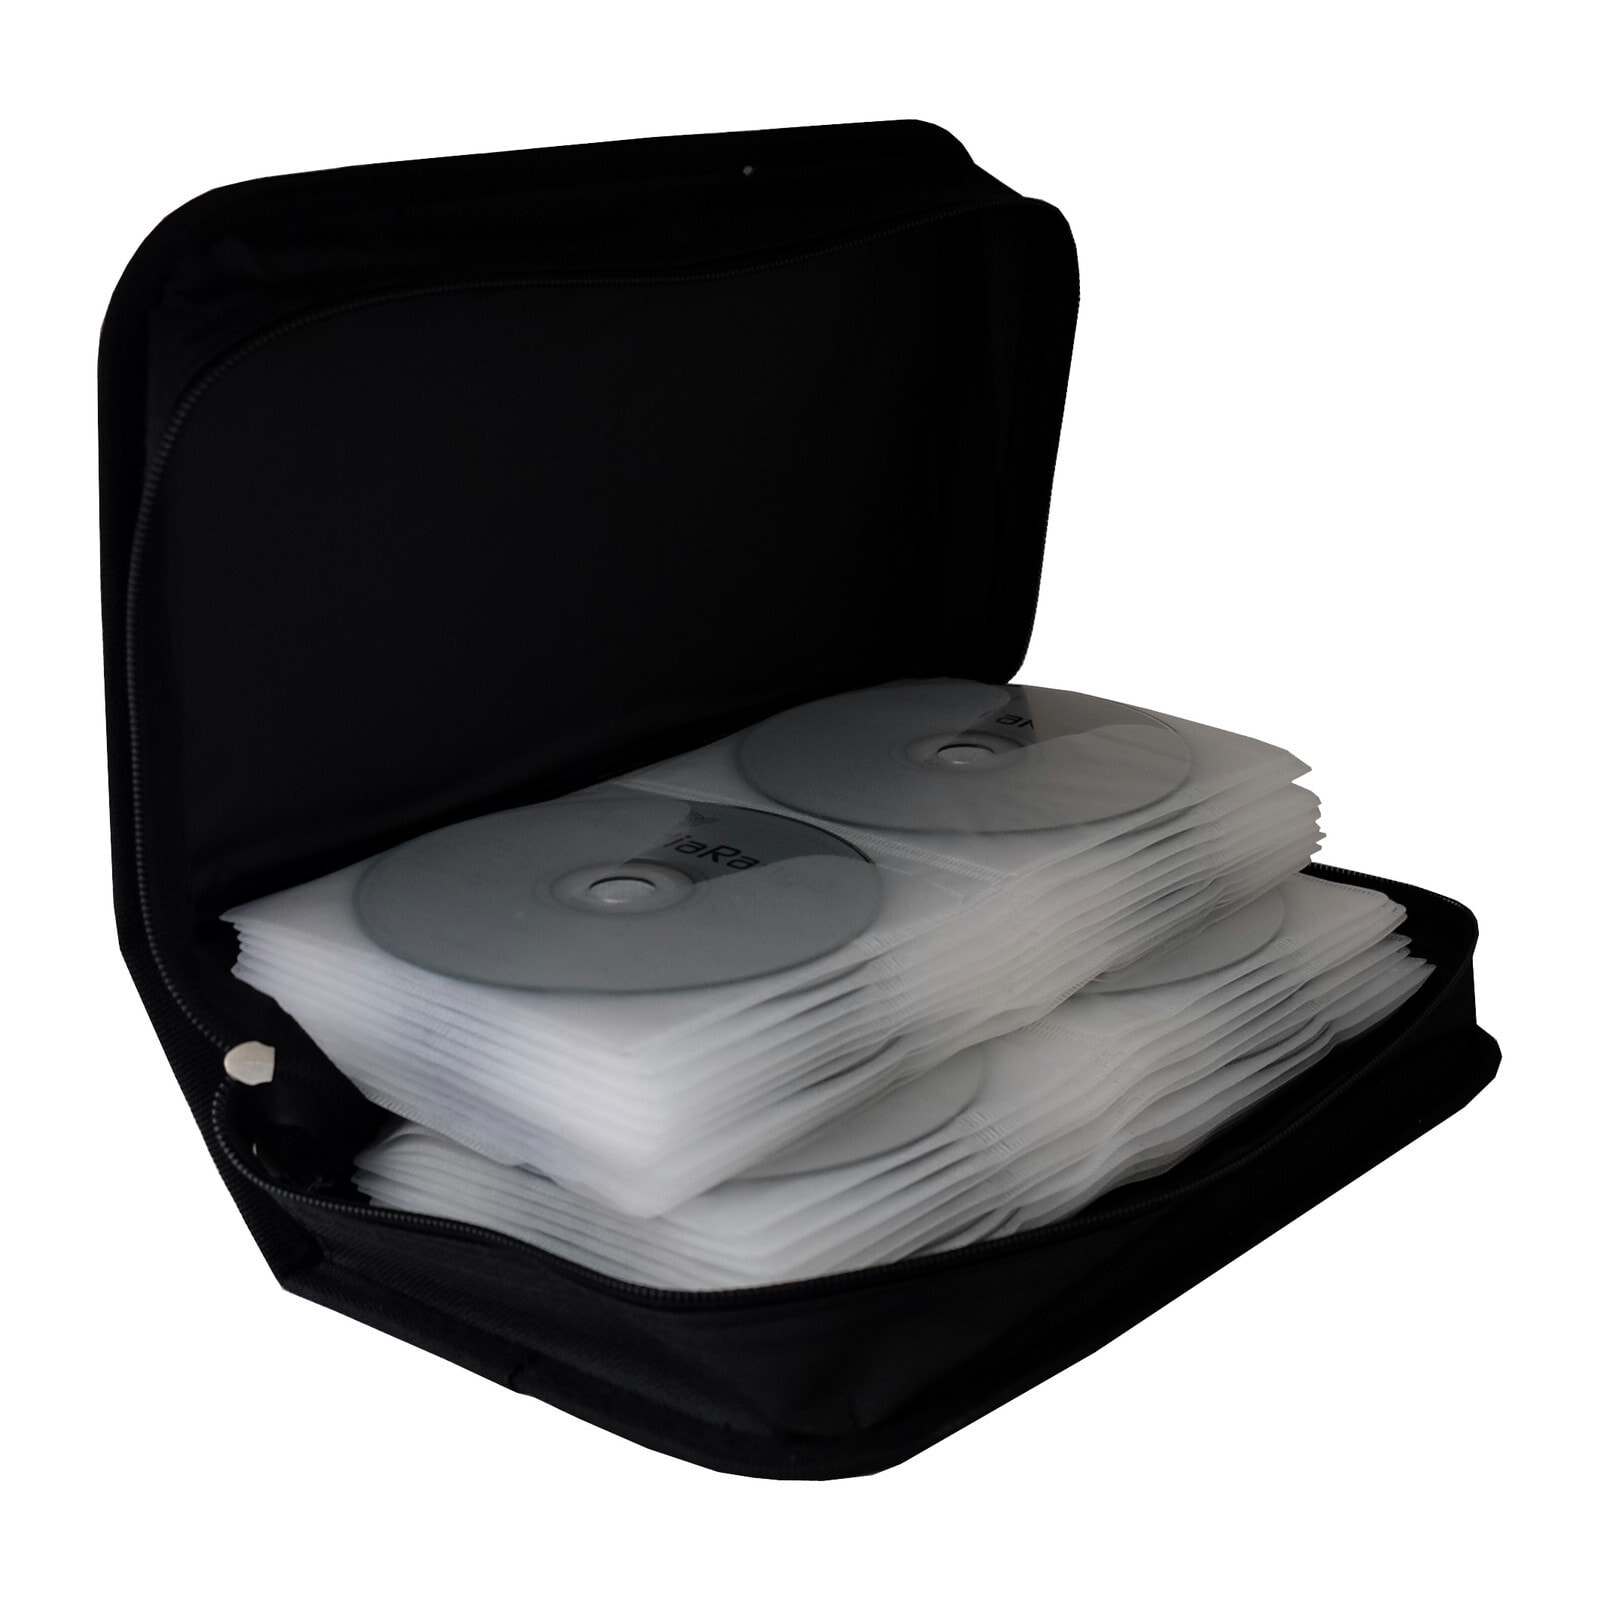 MediaRange BOX55 чехлы для оптических дисков чехол-бумажник 96 диск (ов) Черный